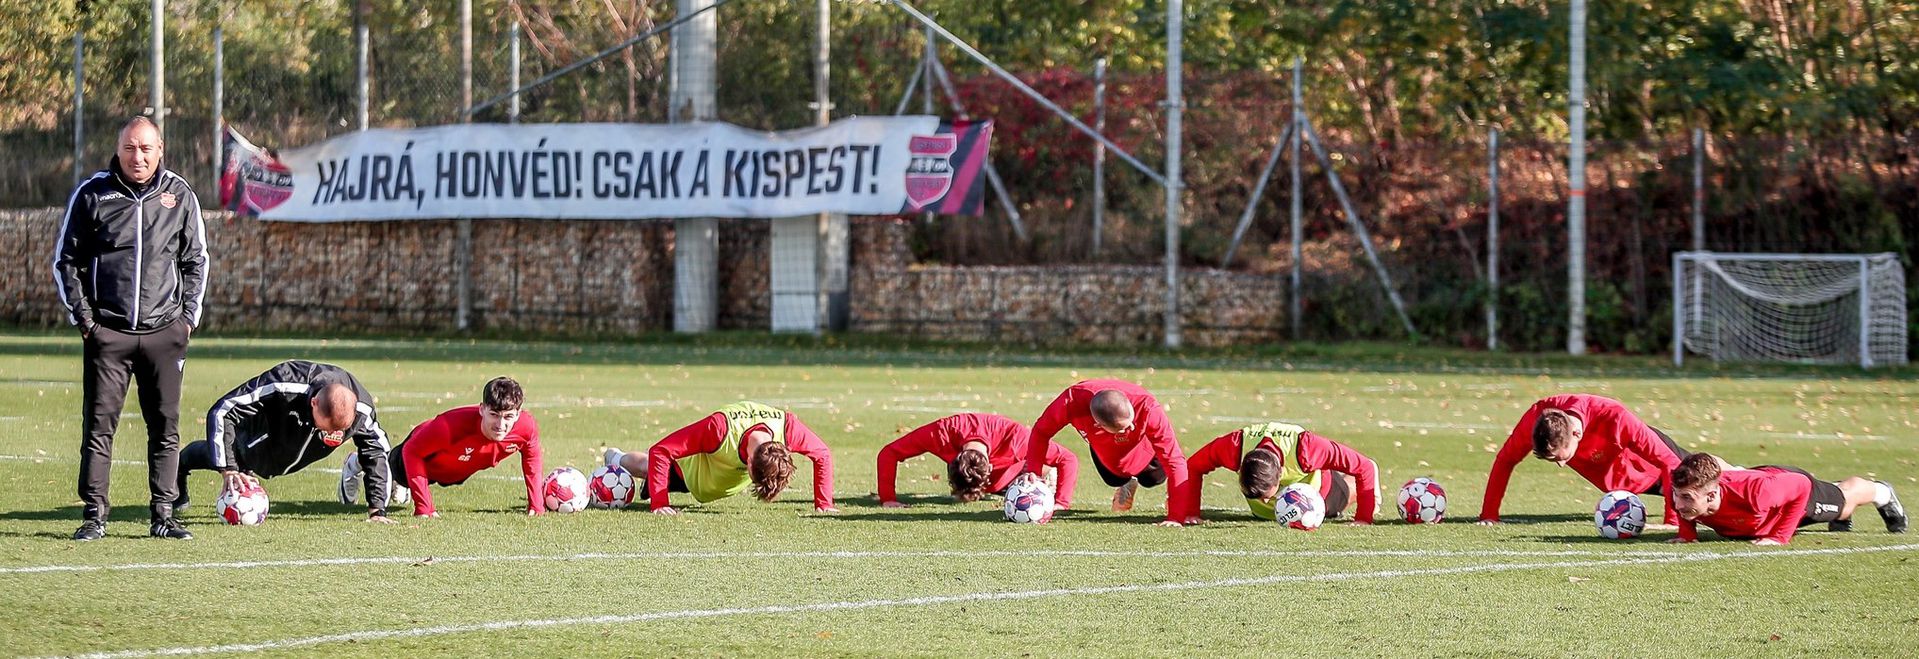 Csertői Aurél felügyelete alatt kemény munka vár a játékosokra… (Fotó: honvedfc.hu)